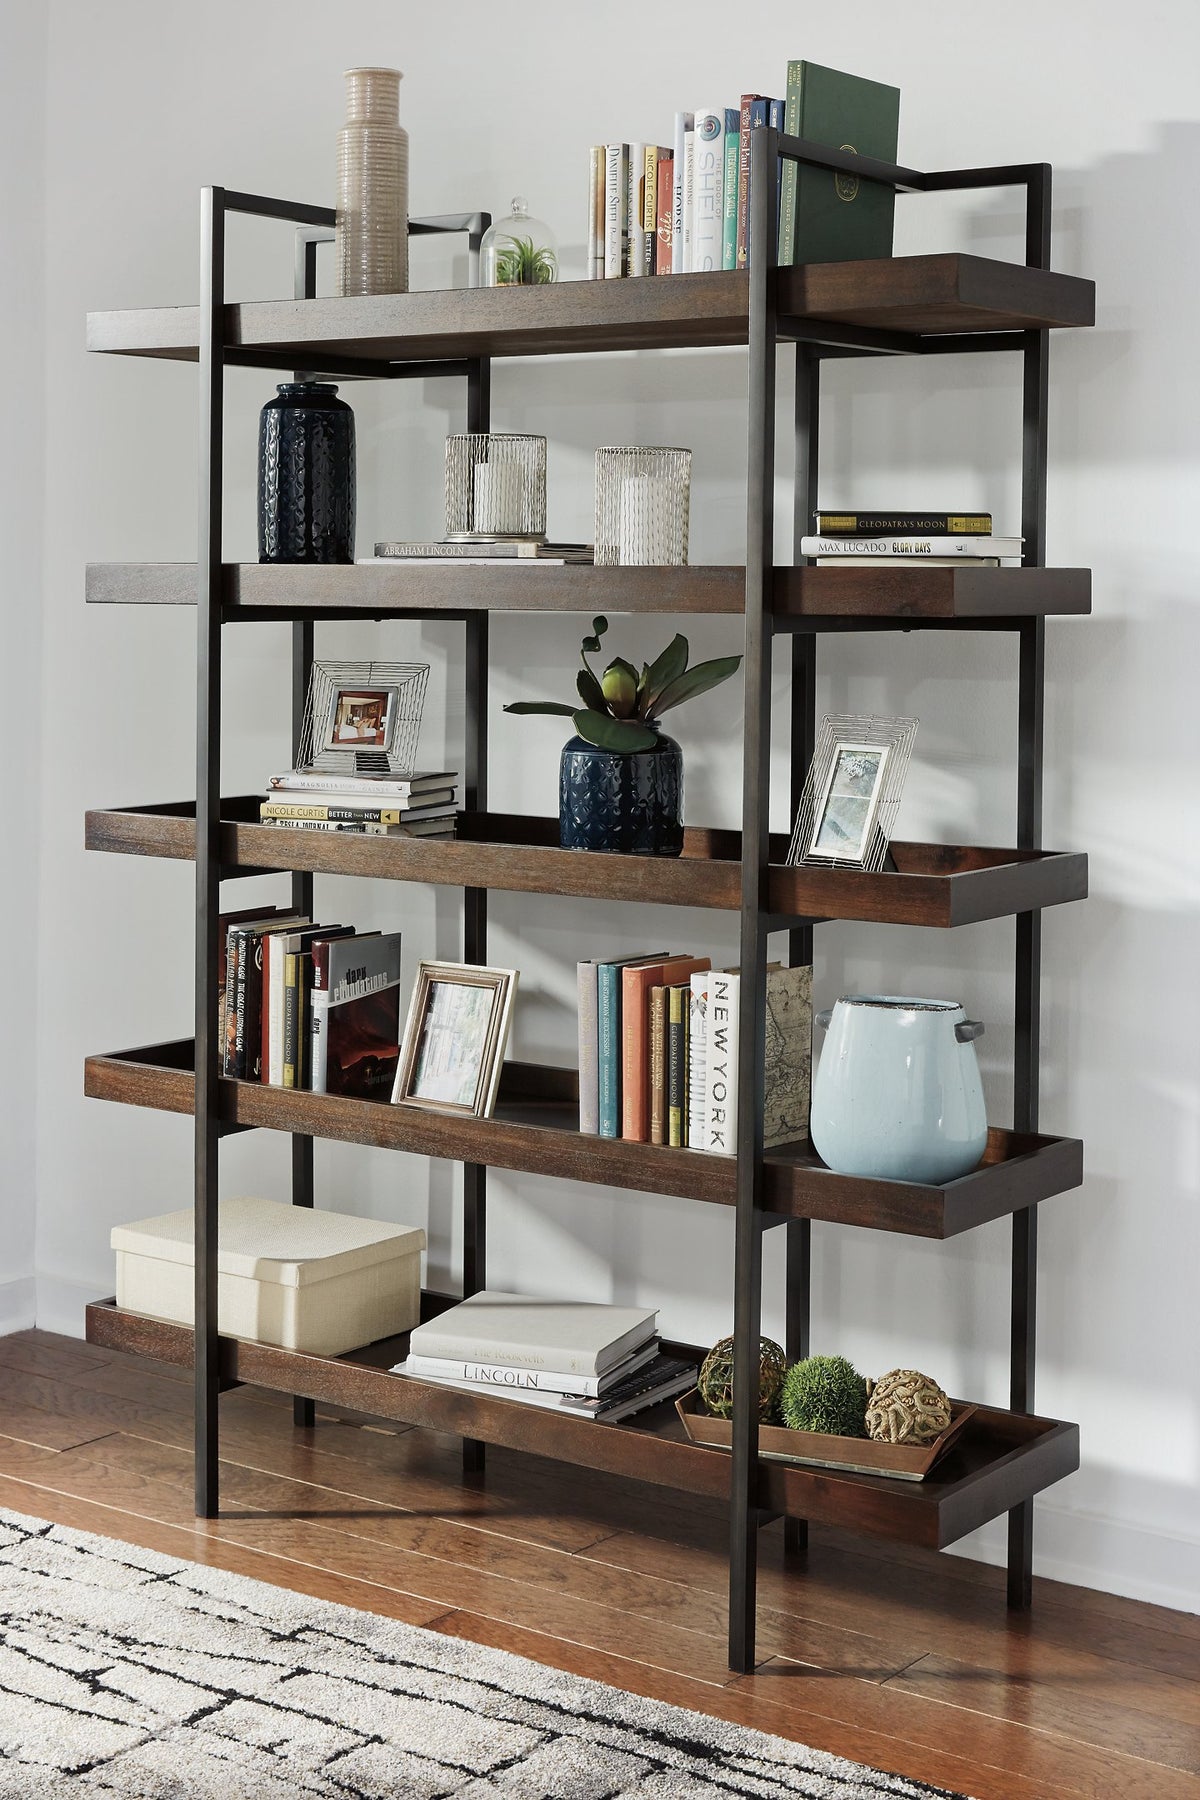 Starmore 76" Bookcase - Half Price Furniture